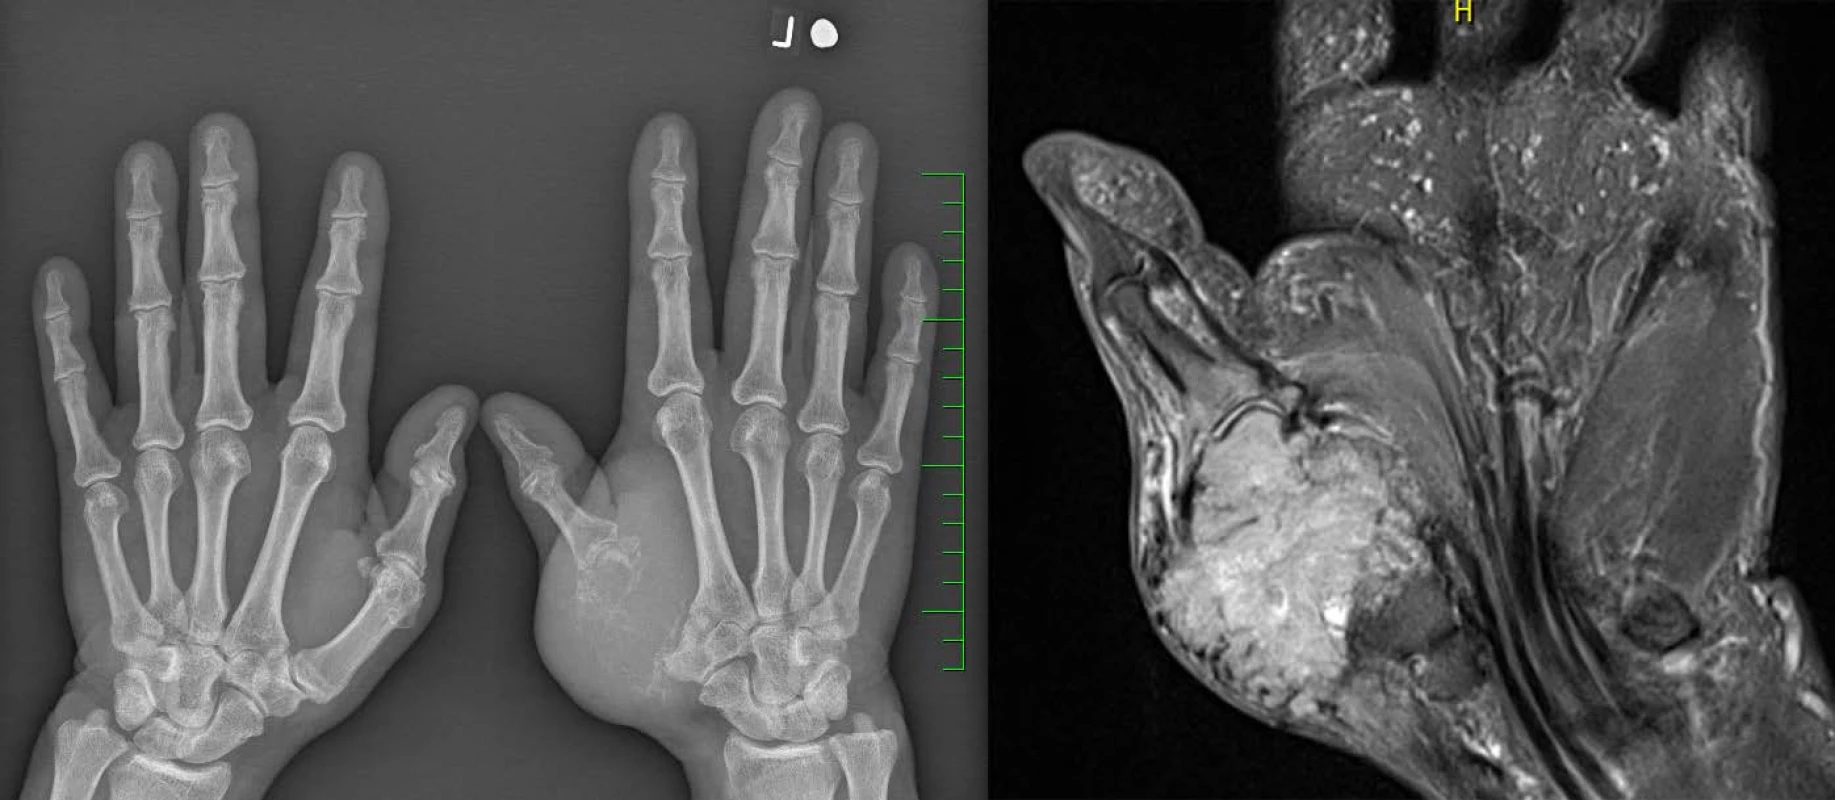 Rtg (vlevo) a MRI (vpravo): metastáza světlobuněčného renálního karcinomu v záprstní kosti palce levé ruky
Fig. 1. X-ray (left) and MRI (right): the metastasis of a clear cell renal cell carcinoma in the left thumb